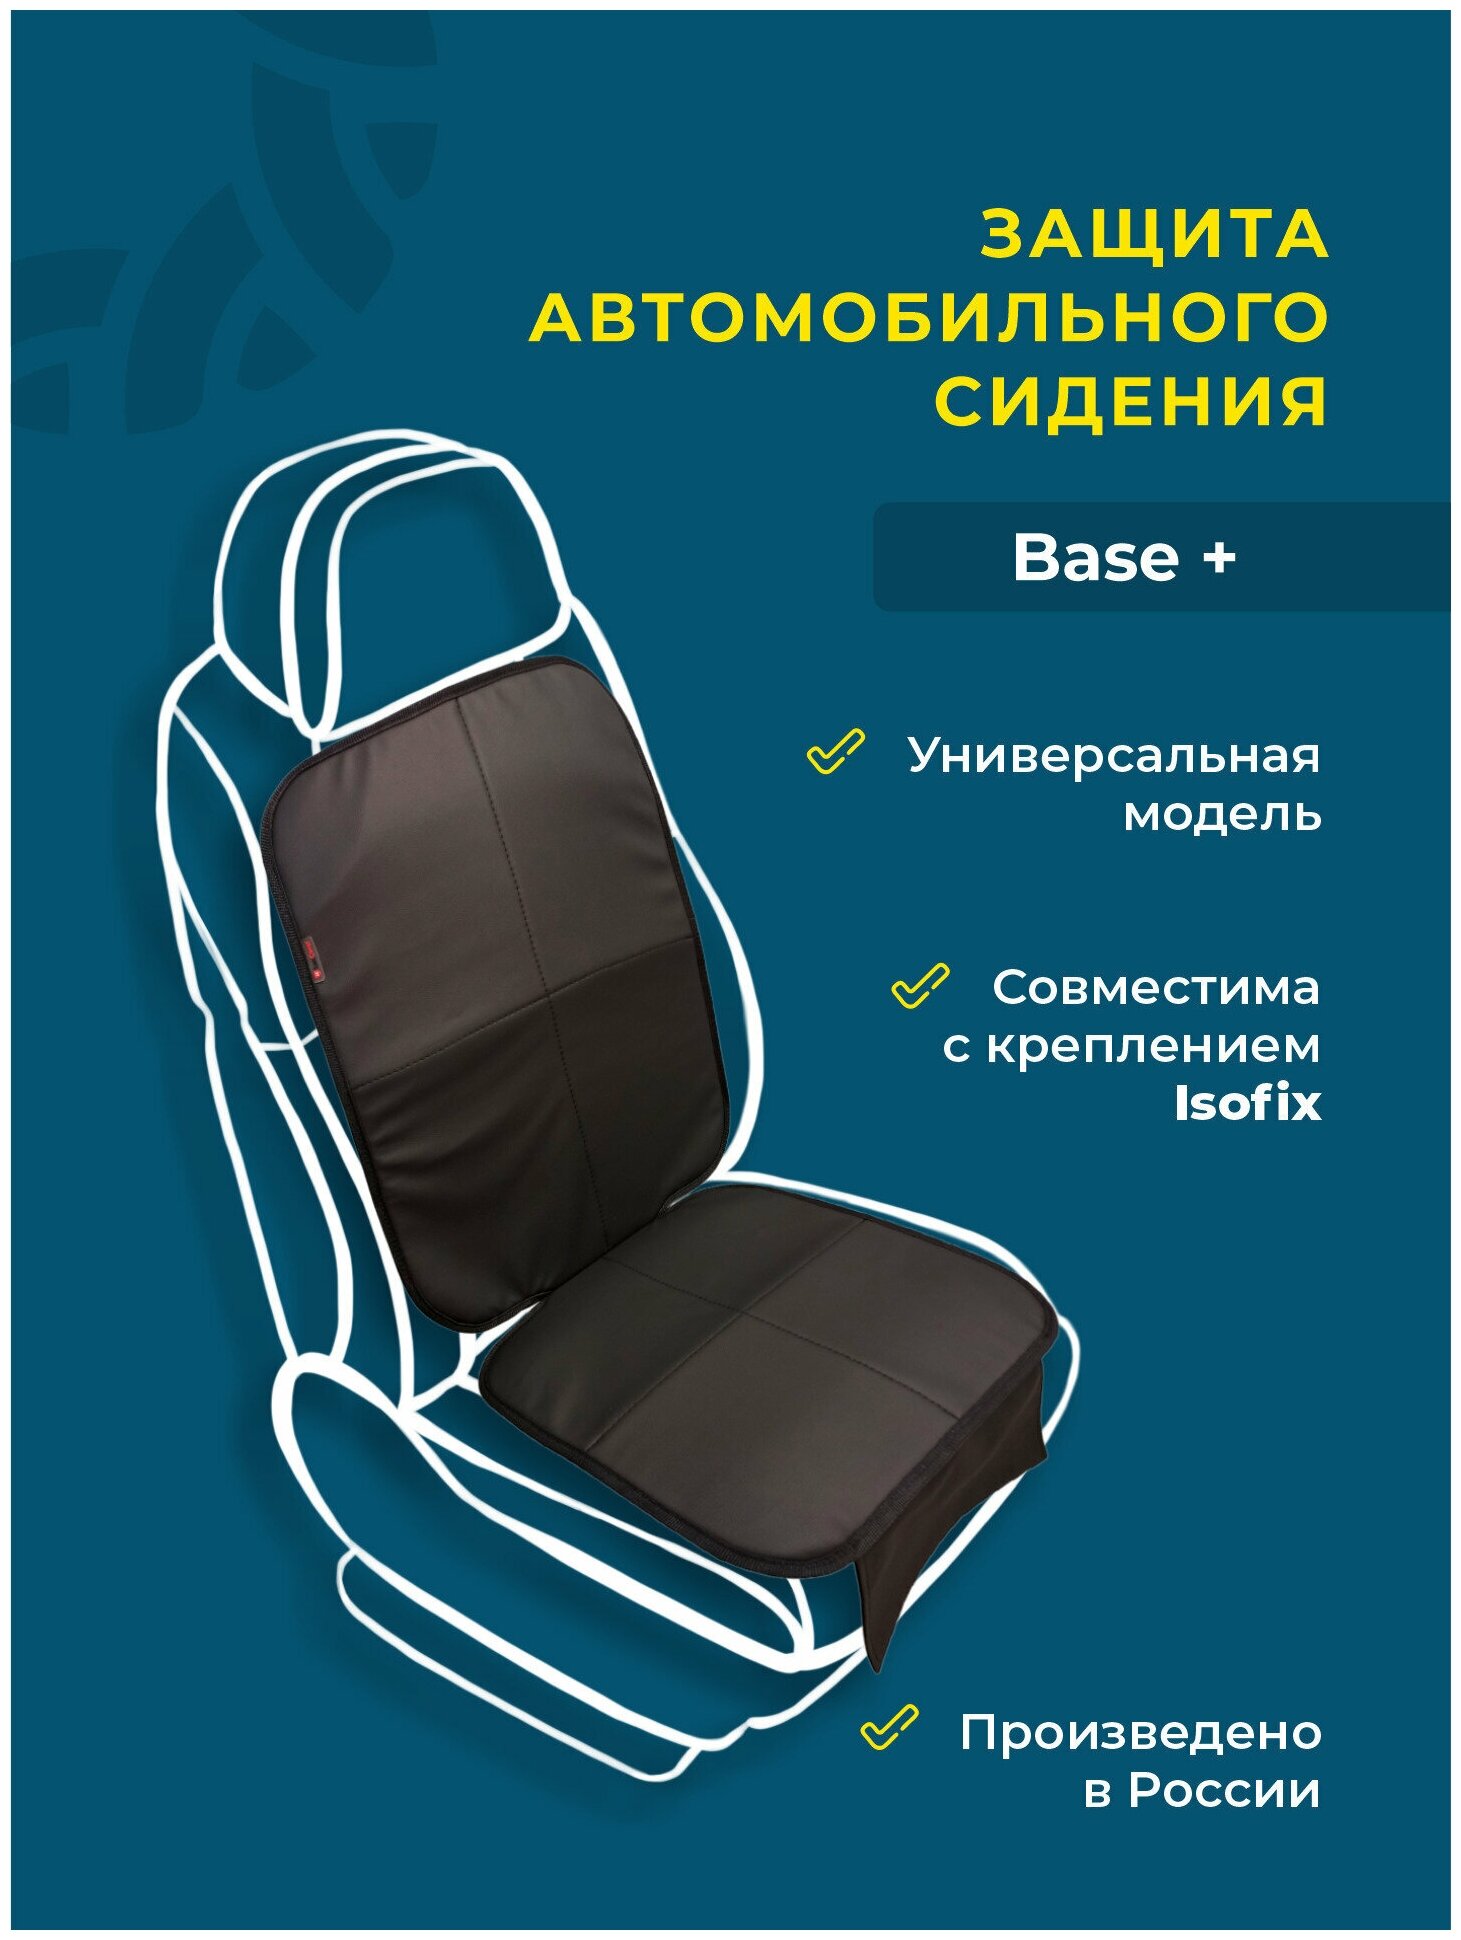 Плотная защита автомобильного сидения коврик под детское автокресло Base+